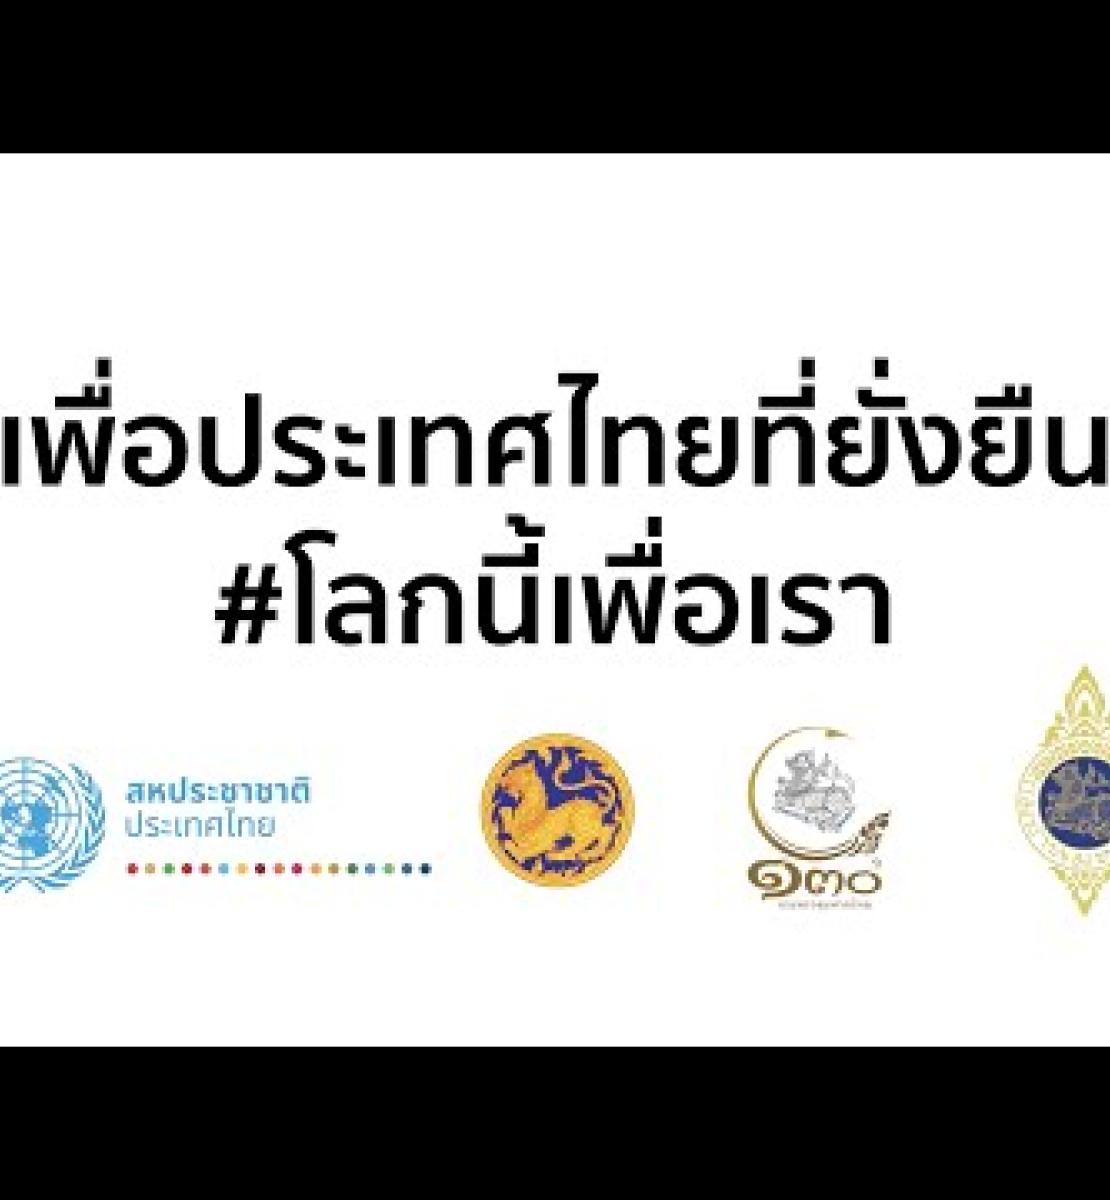 En un avance histórico, los 76 gobernadores de Tailandia firman un pacto sobre los ODS centrado en la acción climática